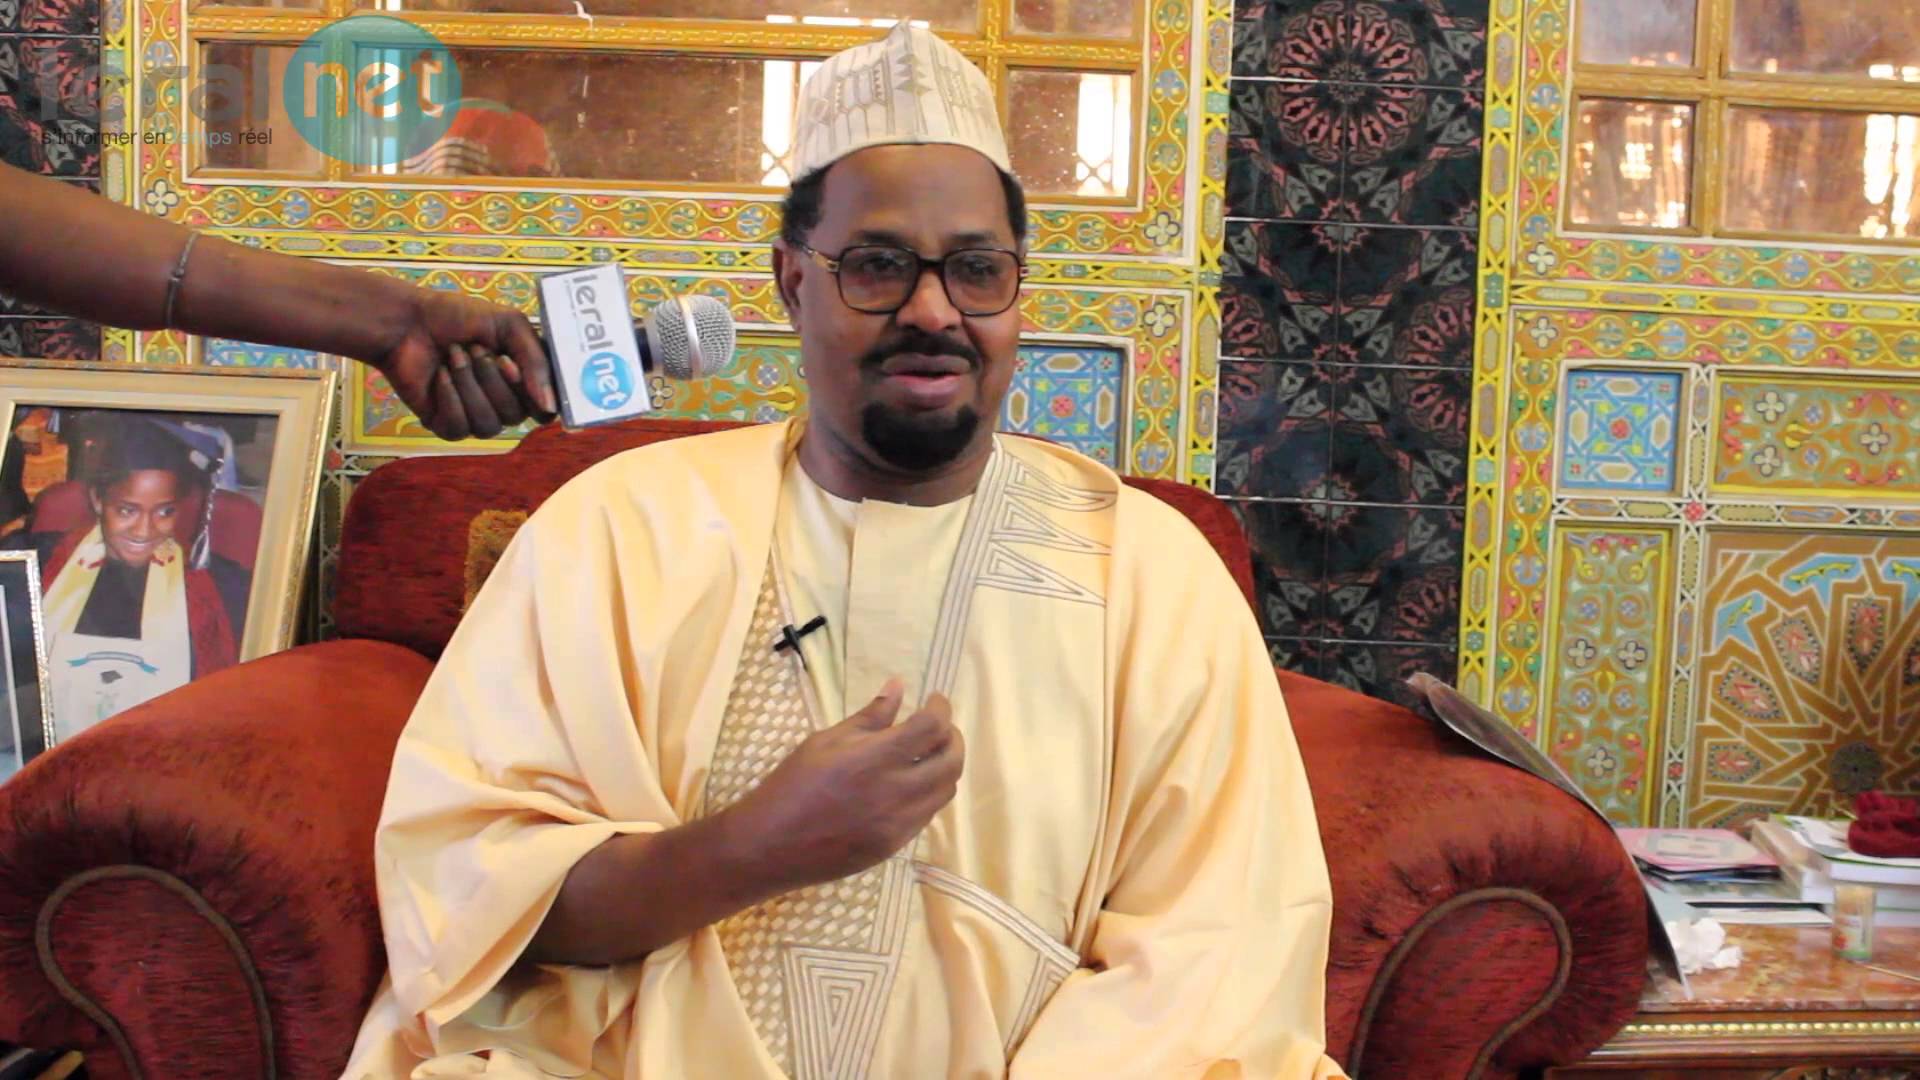 Islam : Le prêche extrémiste a-t-il un avenir au Sénégal ? (Par Ahmad Khalifa Niasse)